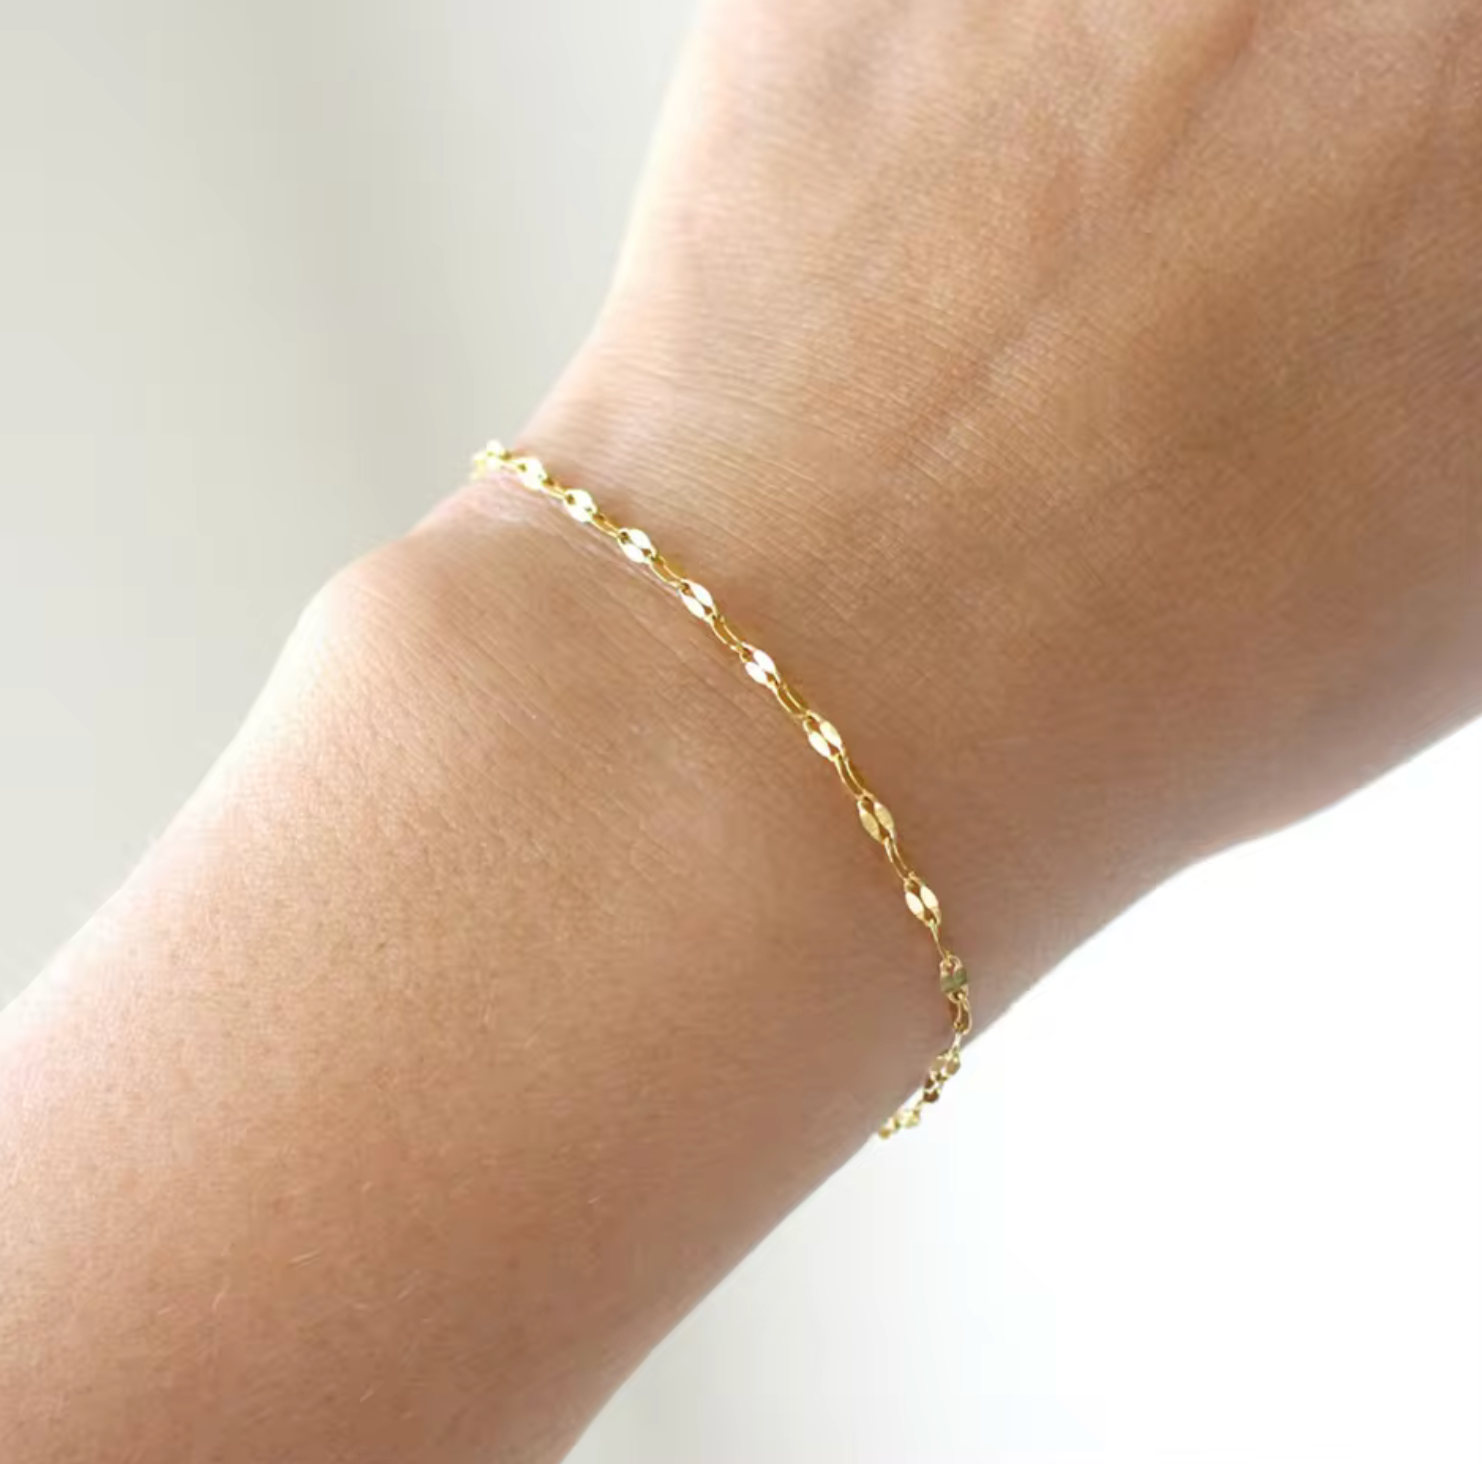 Cute Bracelet • Gold Silver bracelet • stainless steel • waterproof